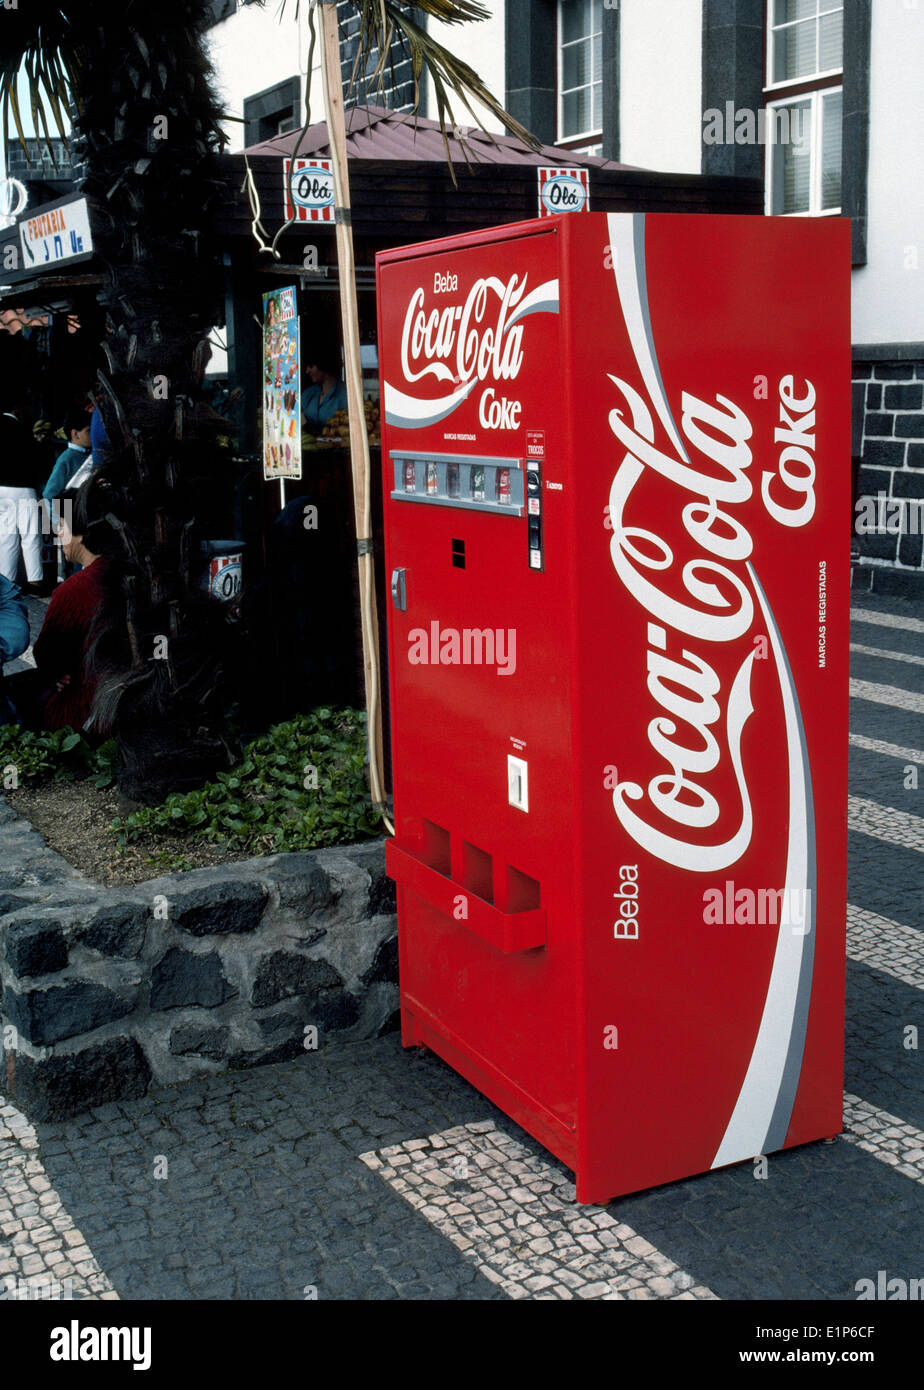 https://c8.alamy.com/comp/E1P6CF/a-bright-red-coca-cola-vending-machine-stands-outdoors-in-ponta-delgada-E1P6CF.jpg